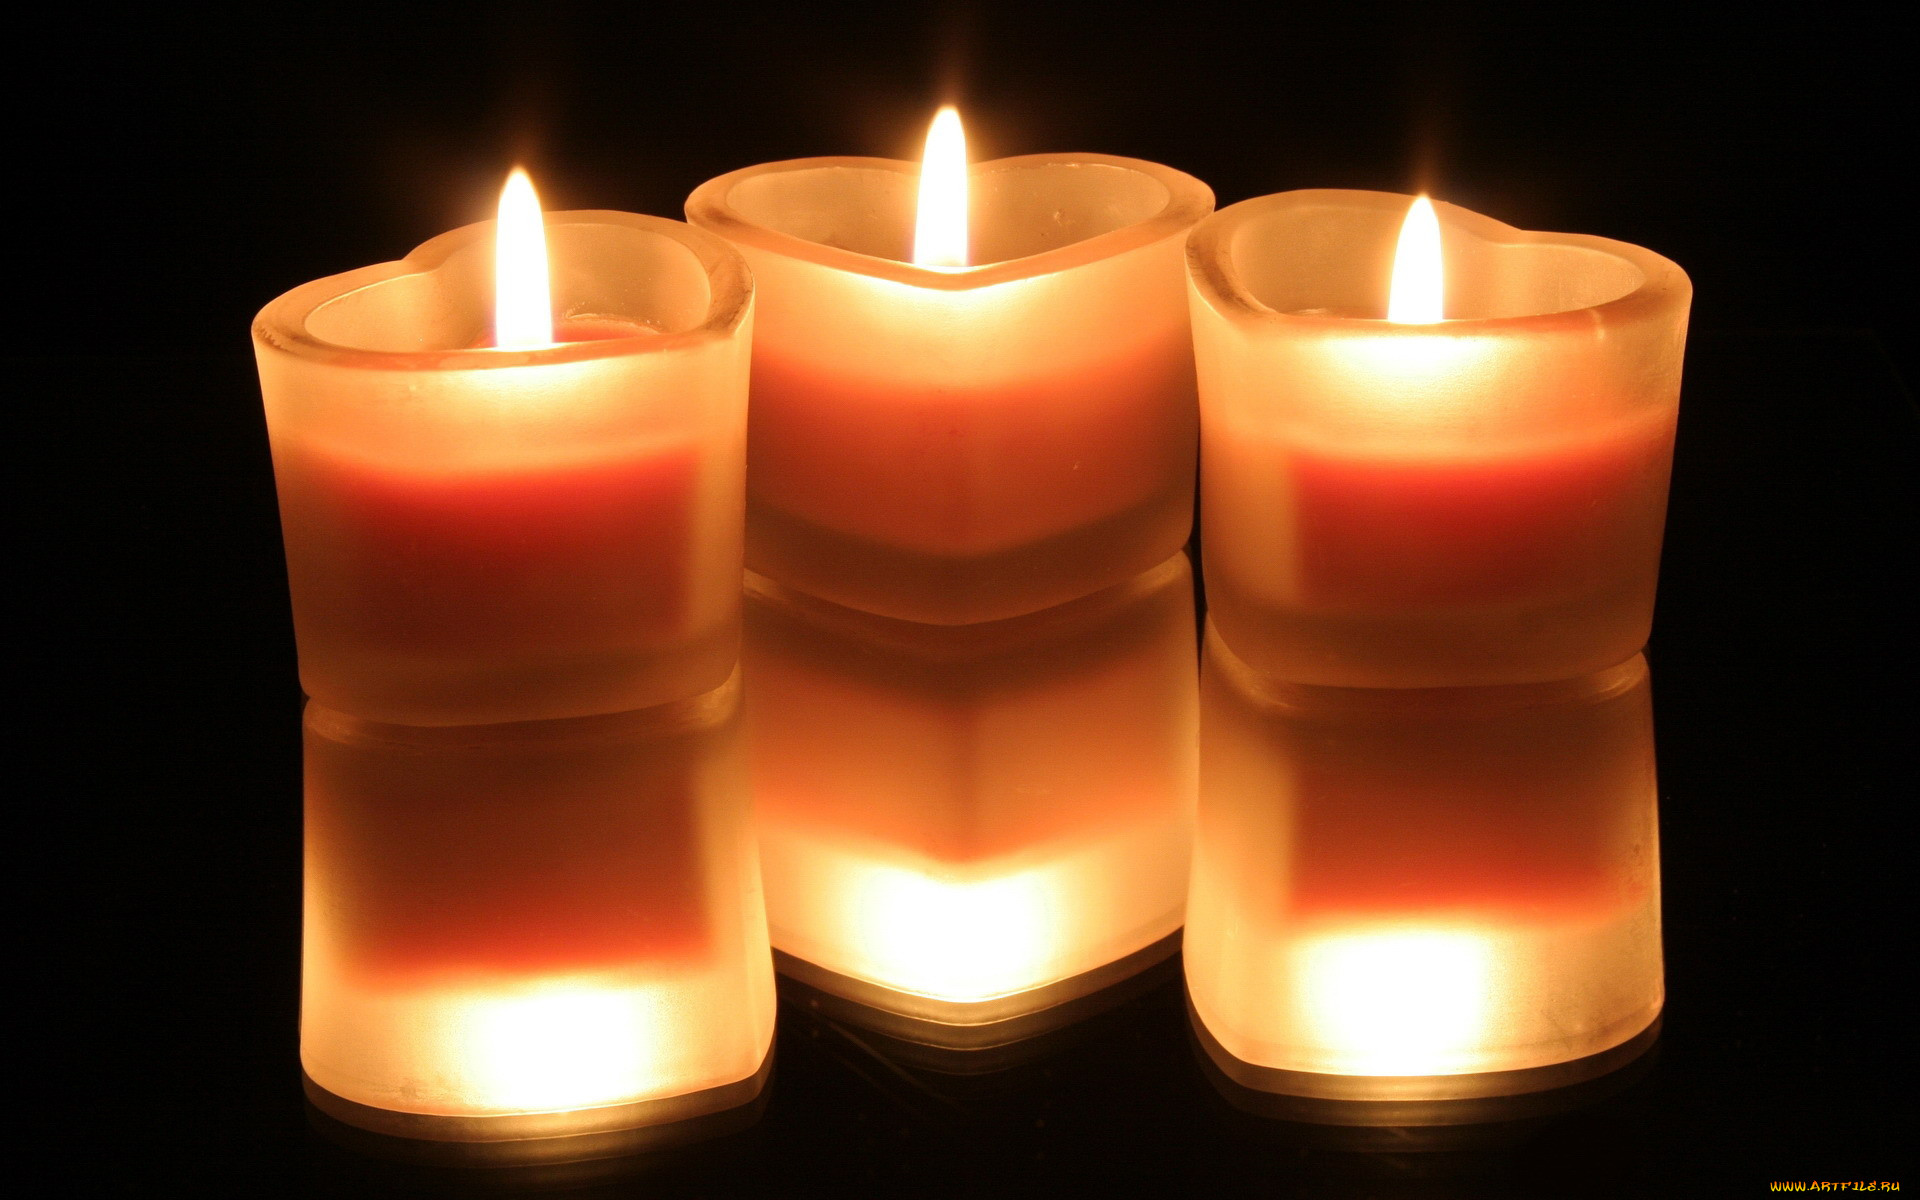 Горят три свечи. Красивые свечи. Зажженная свеча. Горящие свечи. Три горящие свечи.